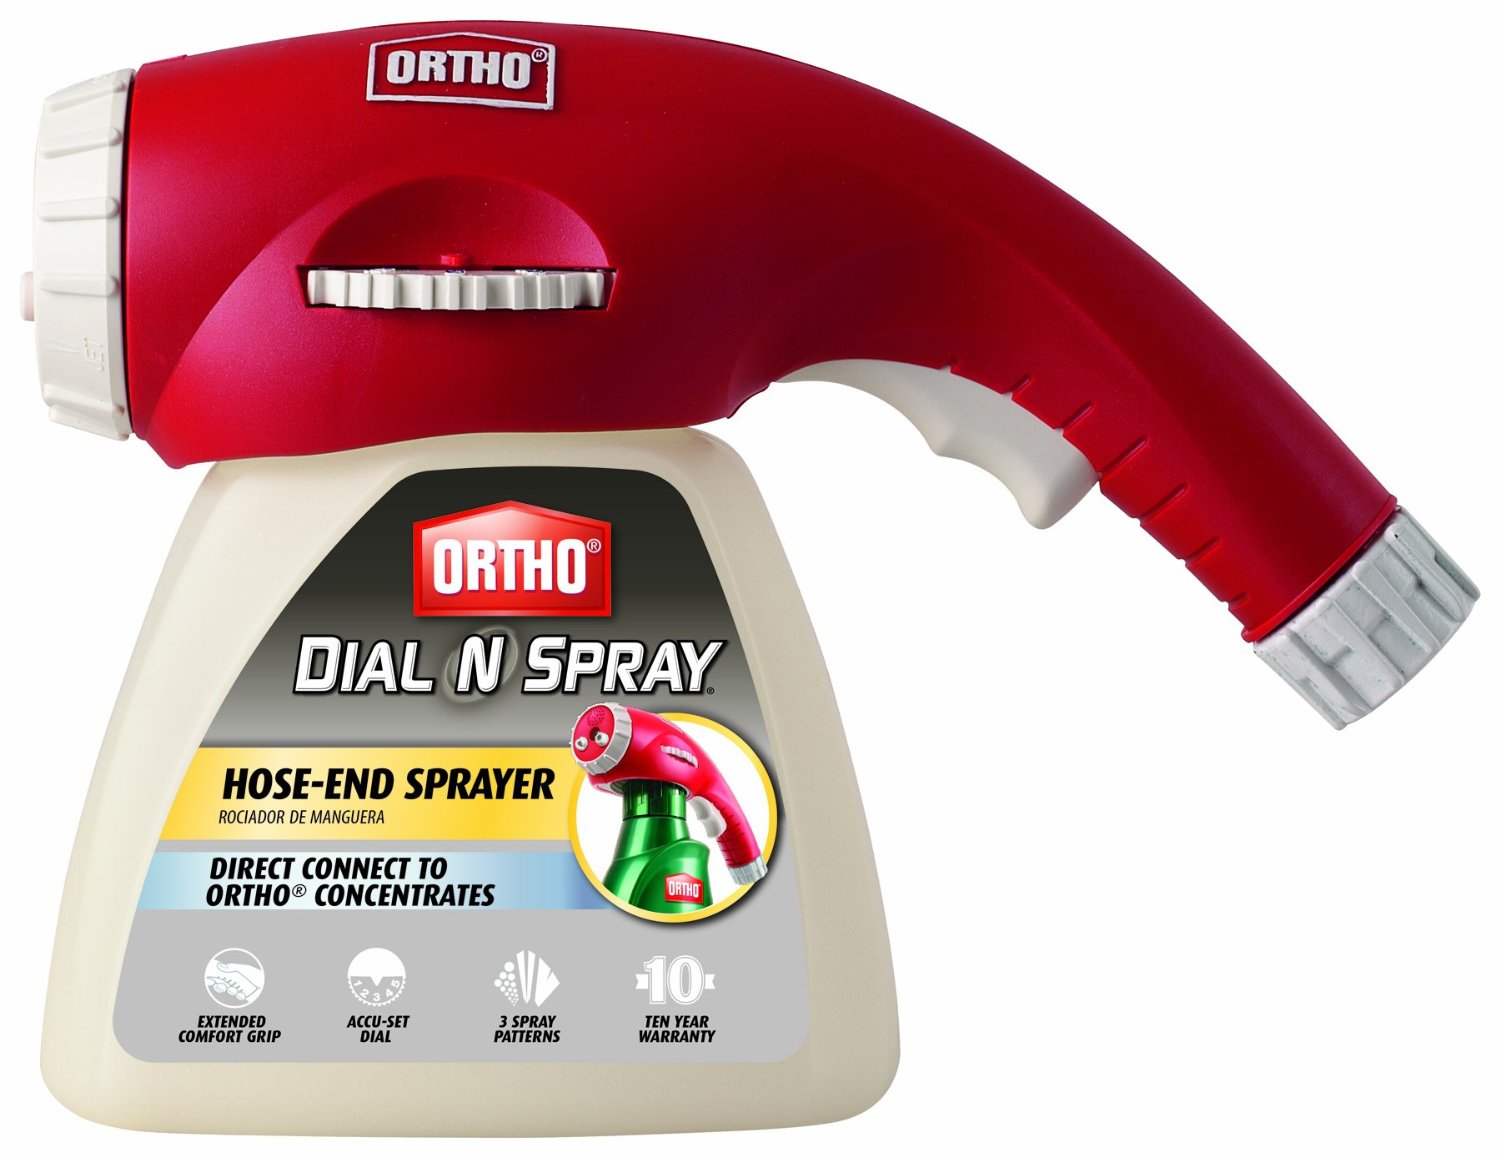 Ortho Dial N Spray Multi-Use Hose-End Sprayer